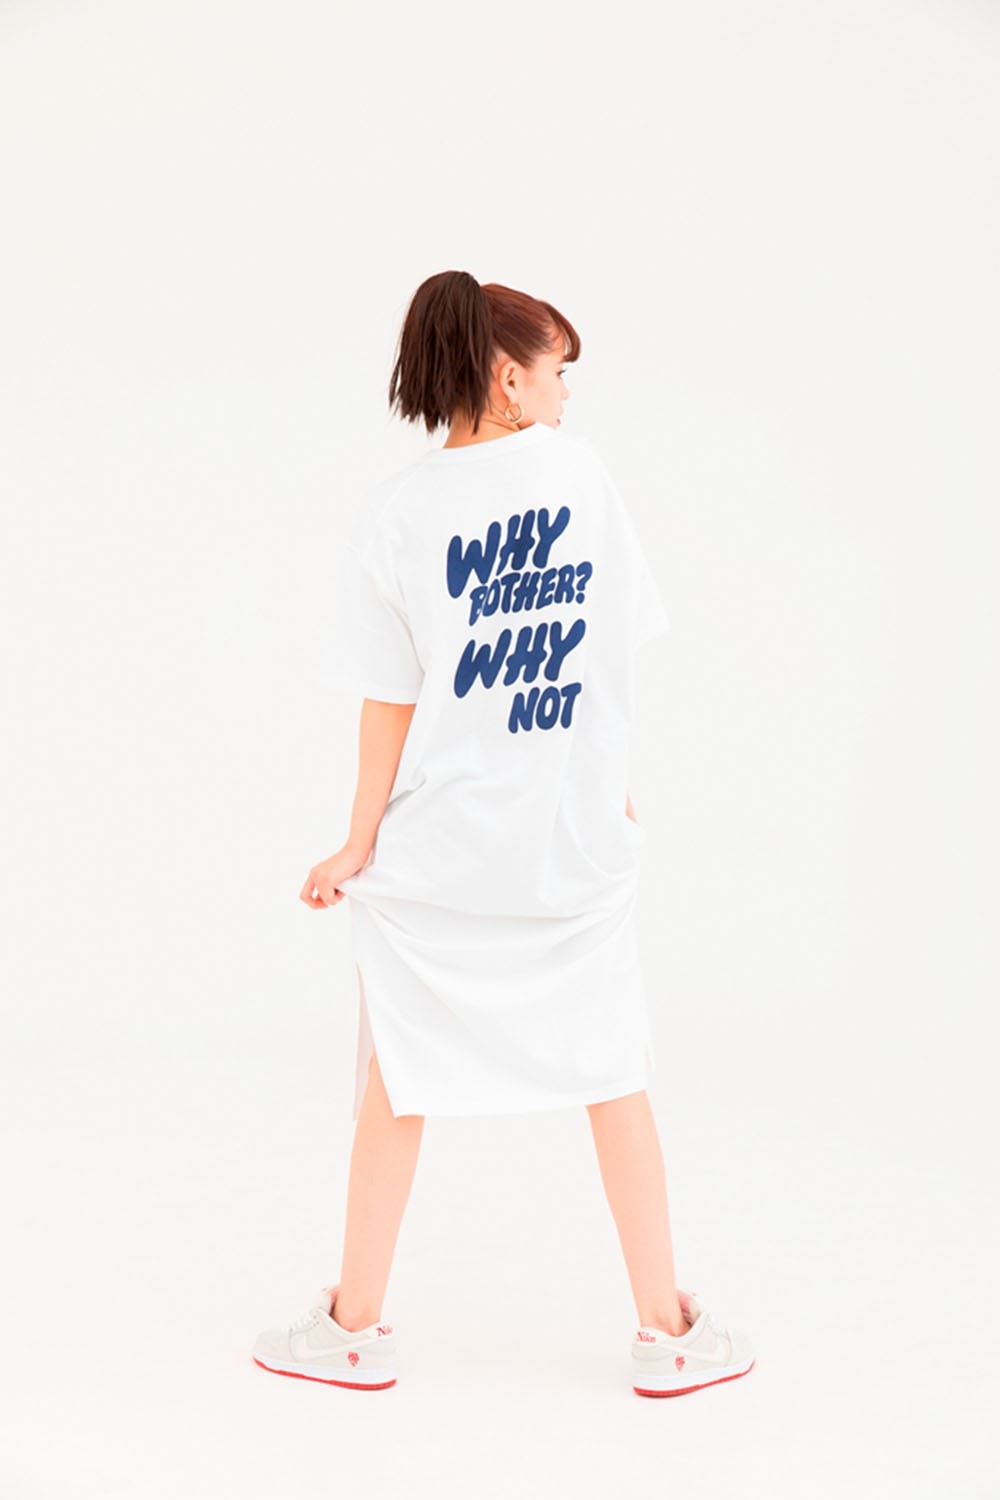 베르디 유니클로 UT 협업 컬렉션 룩북 아이템 인터뷰 니고 2019 봄 여름 키즈 티셔츠 